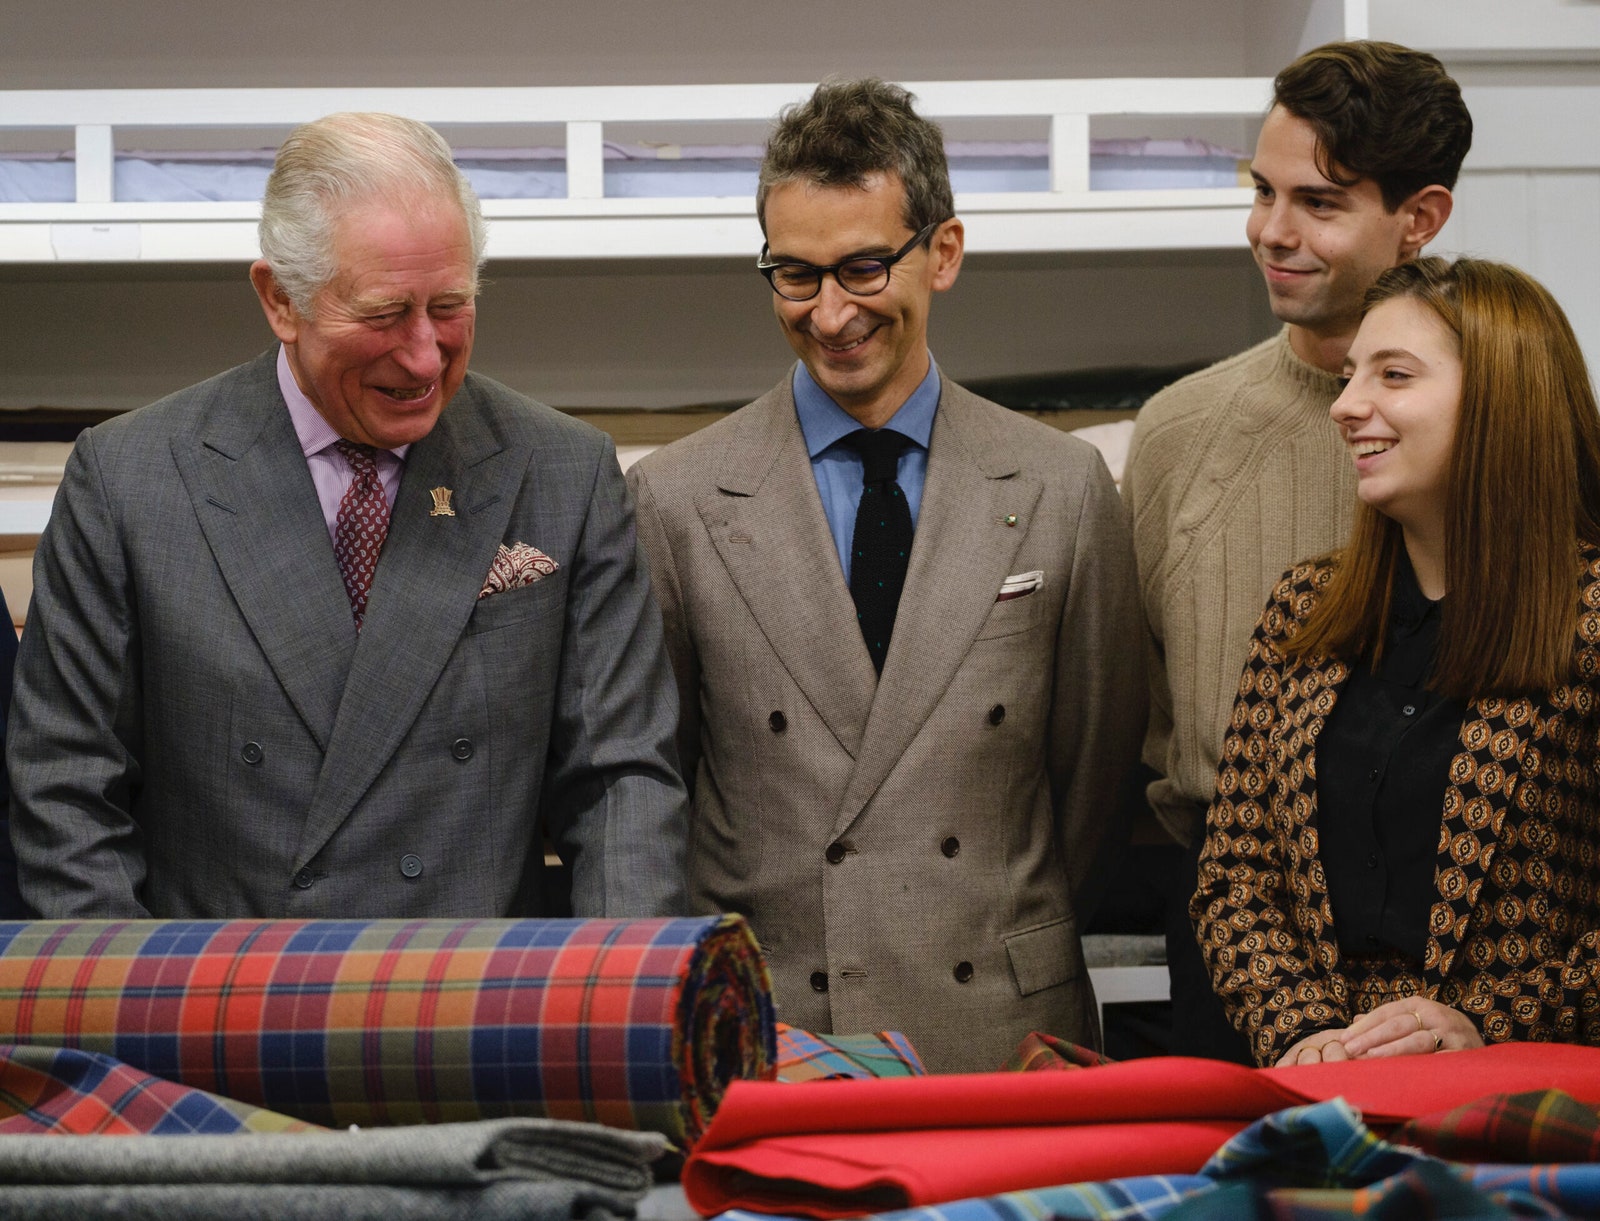 Принц Чарльз представил капсульную коллекцию одежды созданную вручную из лучших английских и итальянских тканей